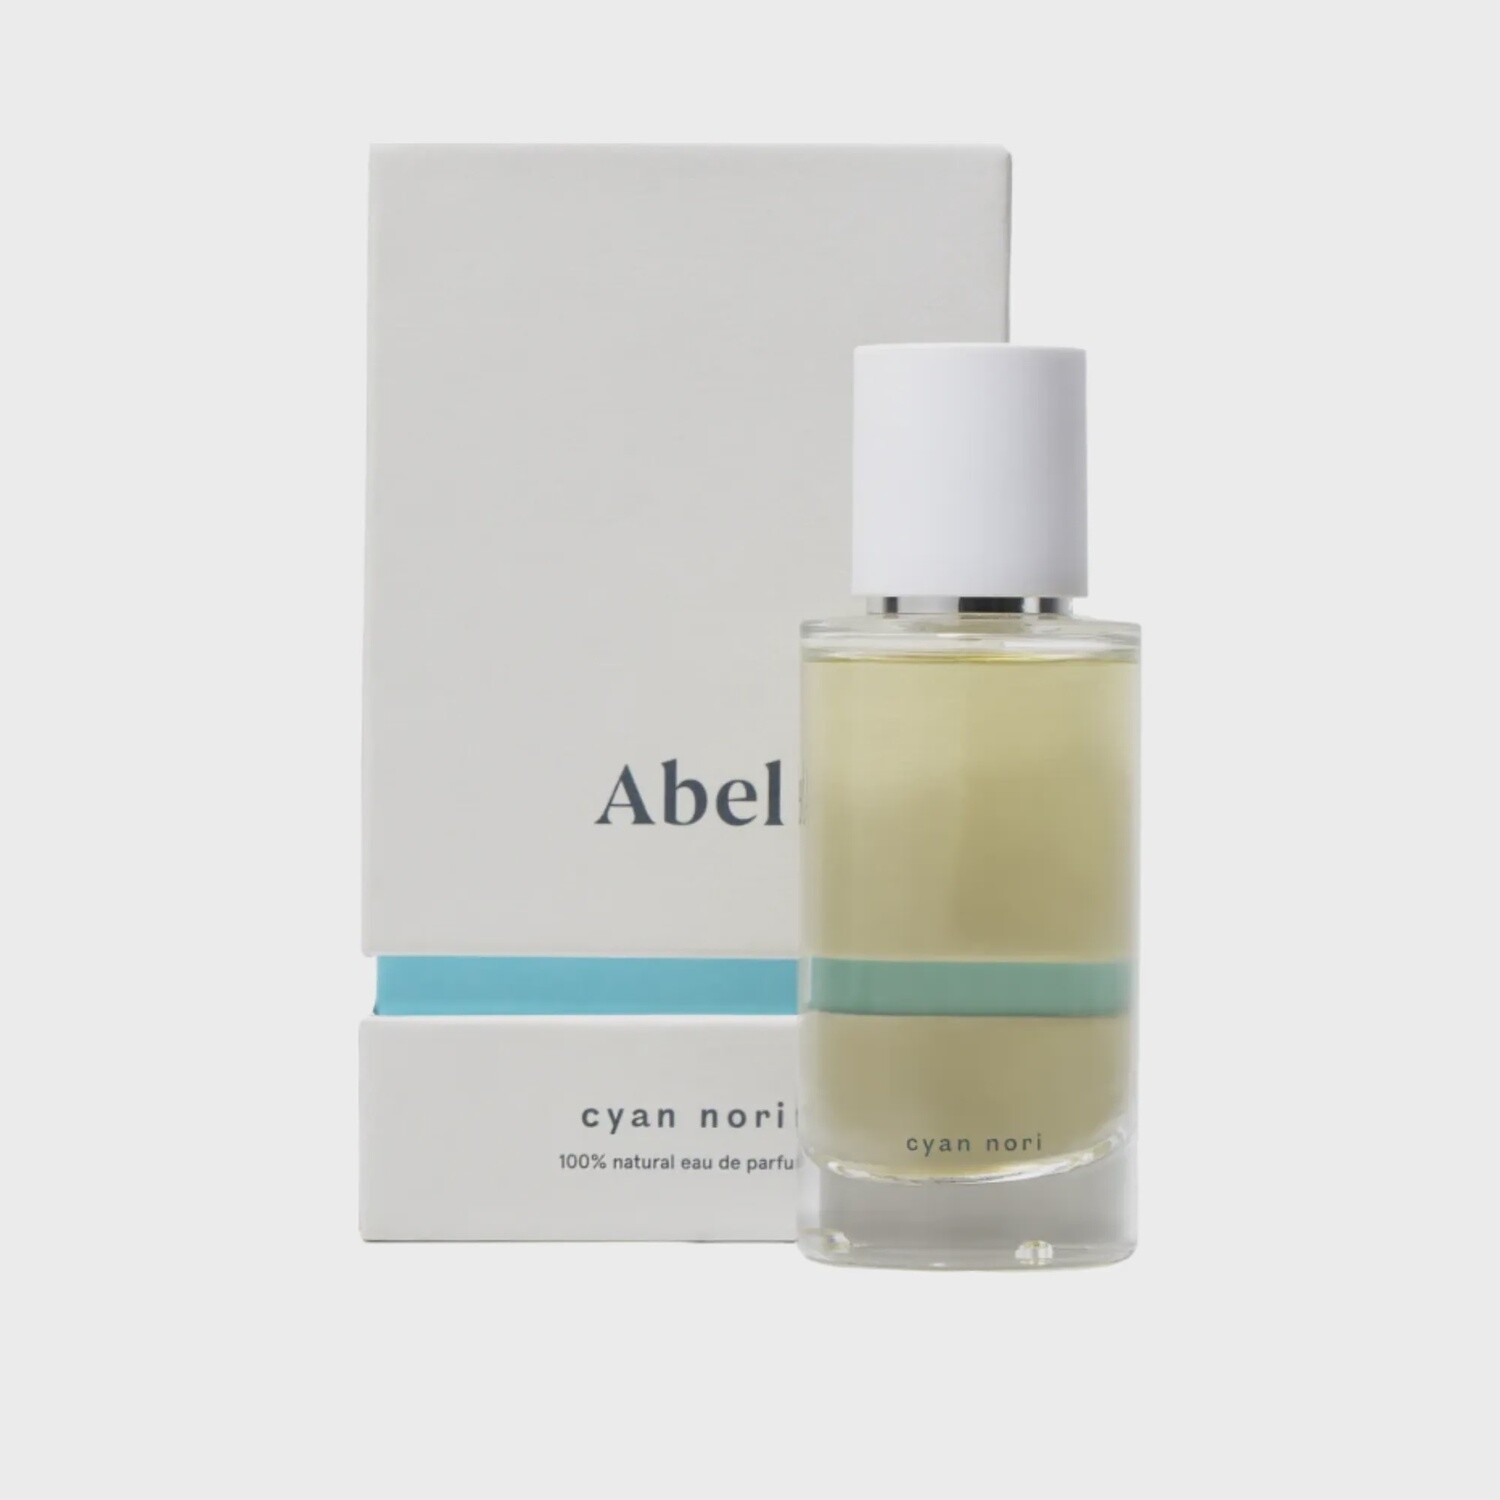 ABEL parfum Cyan Nori 15ml